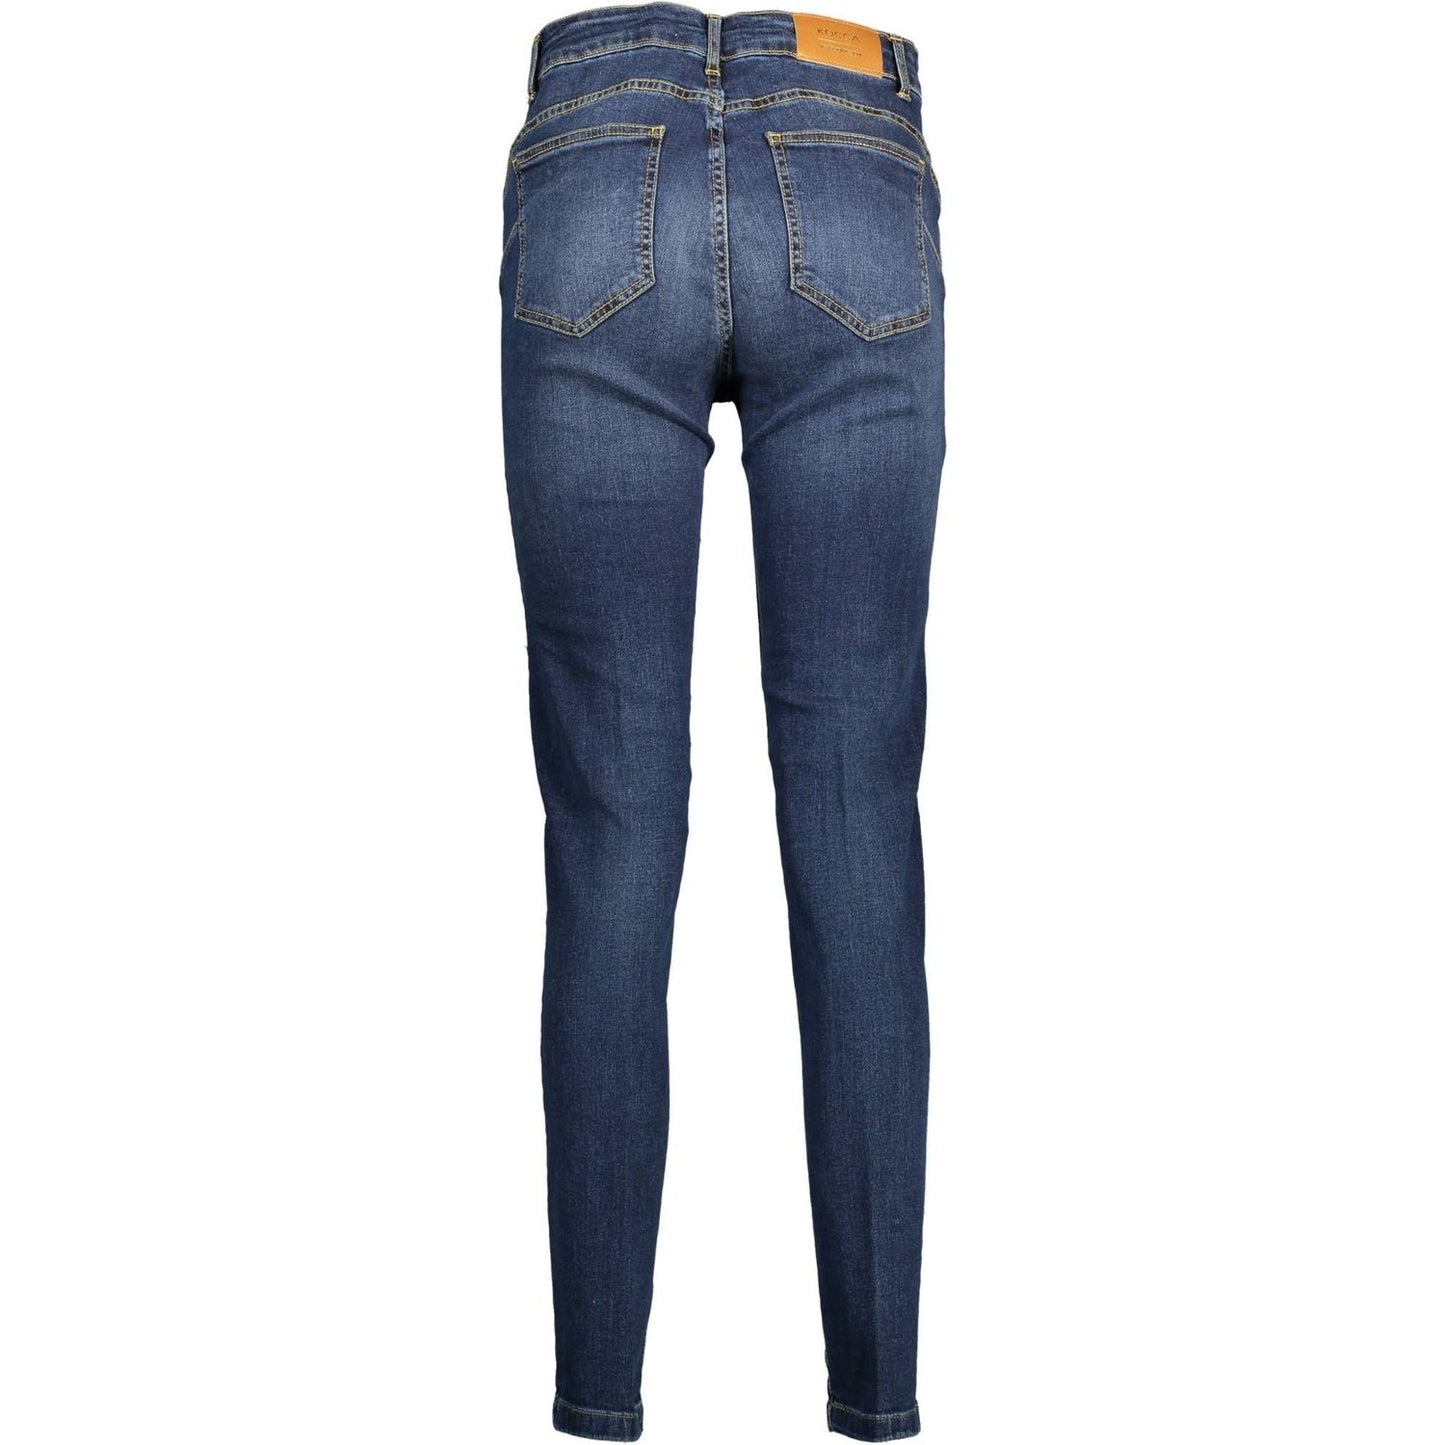 Kocca Chic Blue Stretch Denim Jeans chic-blue-stretch-denim-jeans